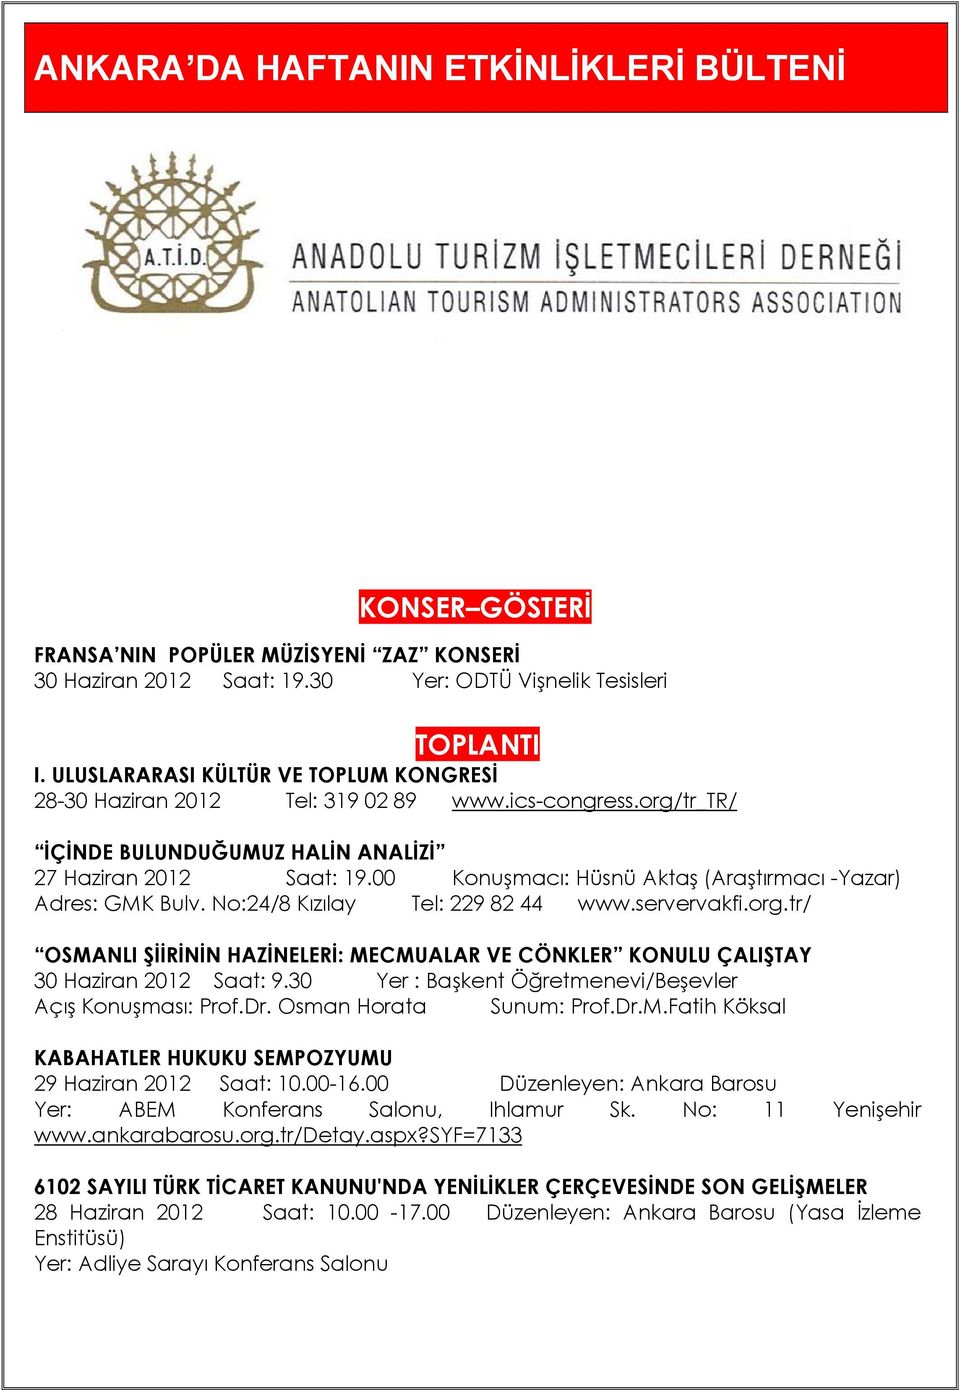 00 Konuşmacı: Hüsnü Aktaş (Araştırmacı -Yazar) Adres: GMK Bulv. No:24/8 Kızılay Tel: 229 82 44 www.servervakfi.org.